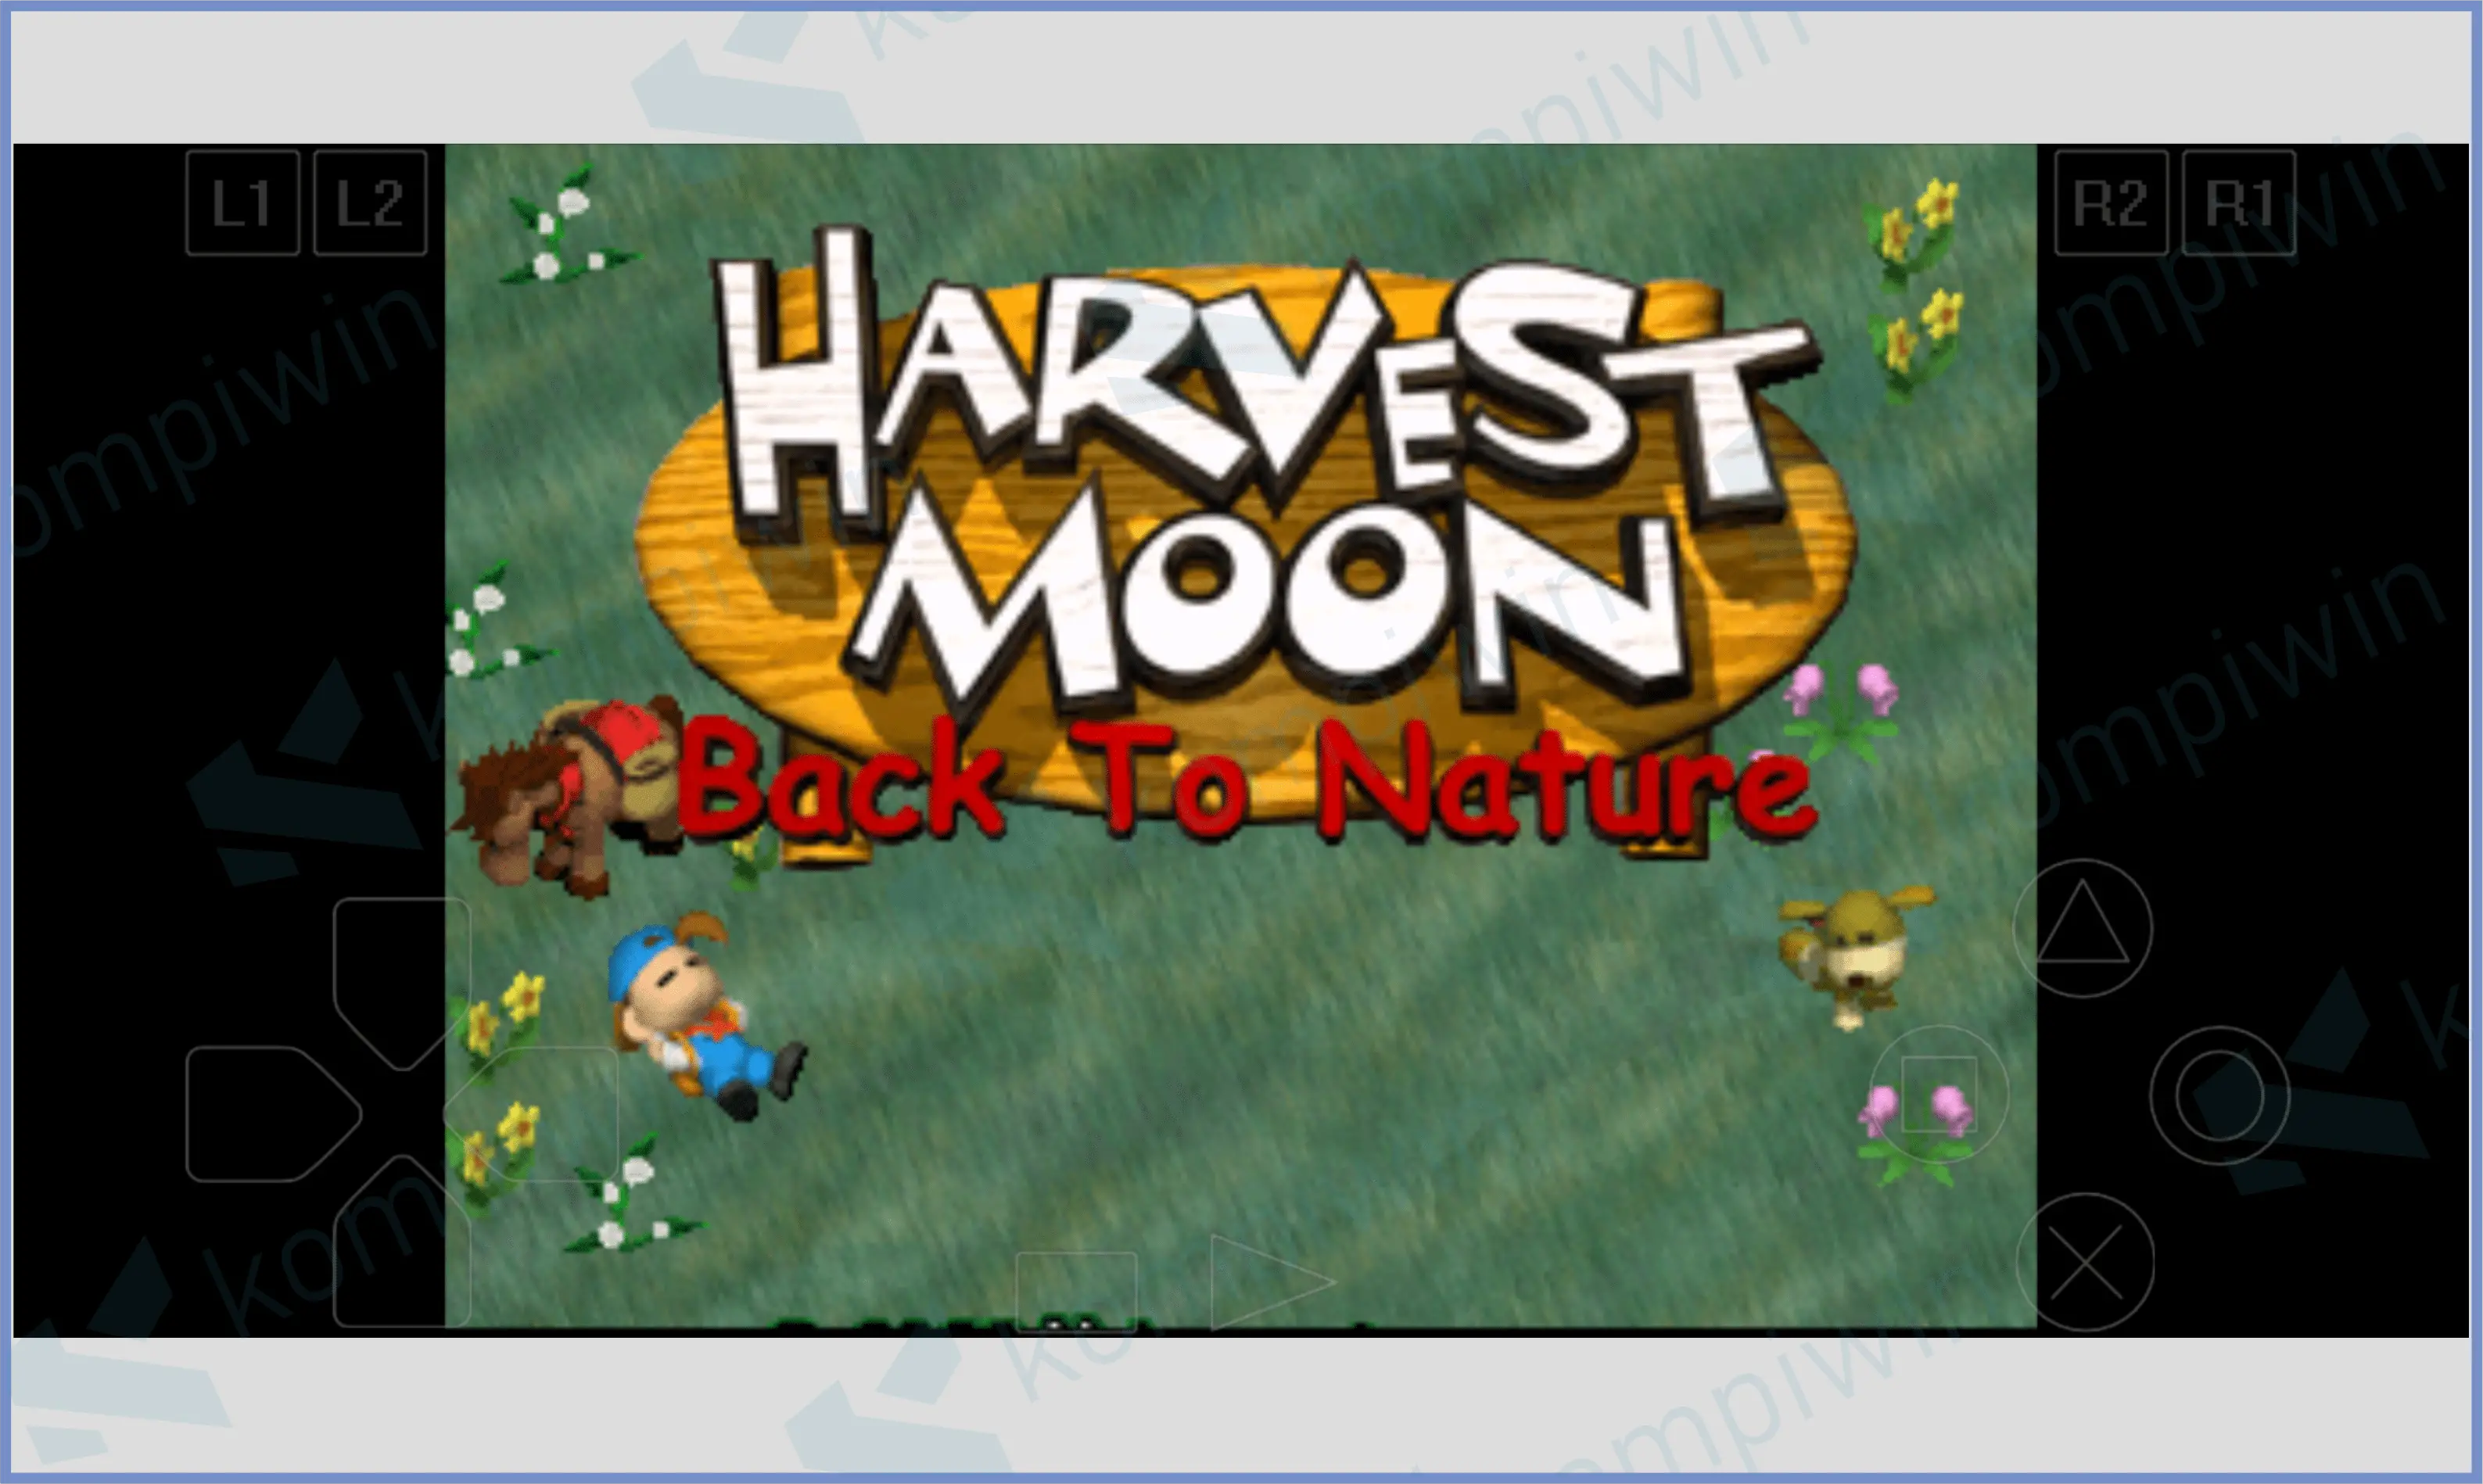 9 Langsung Saja Mainkan Game - Download Harvest Moon Back To Nature